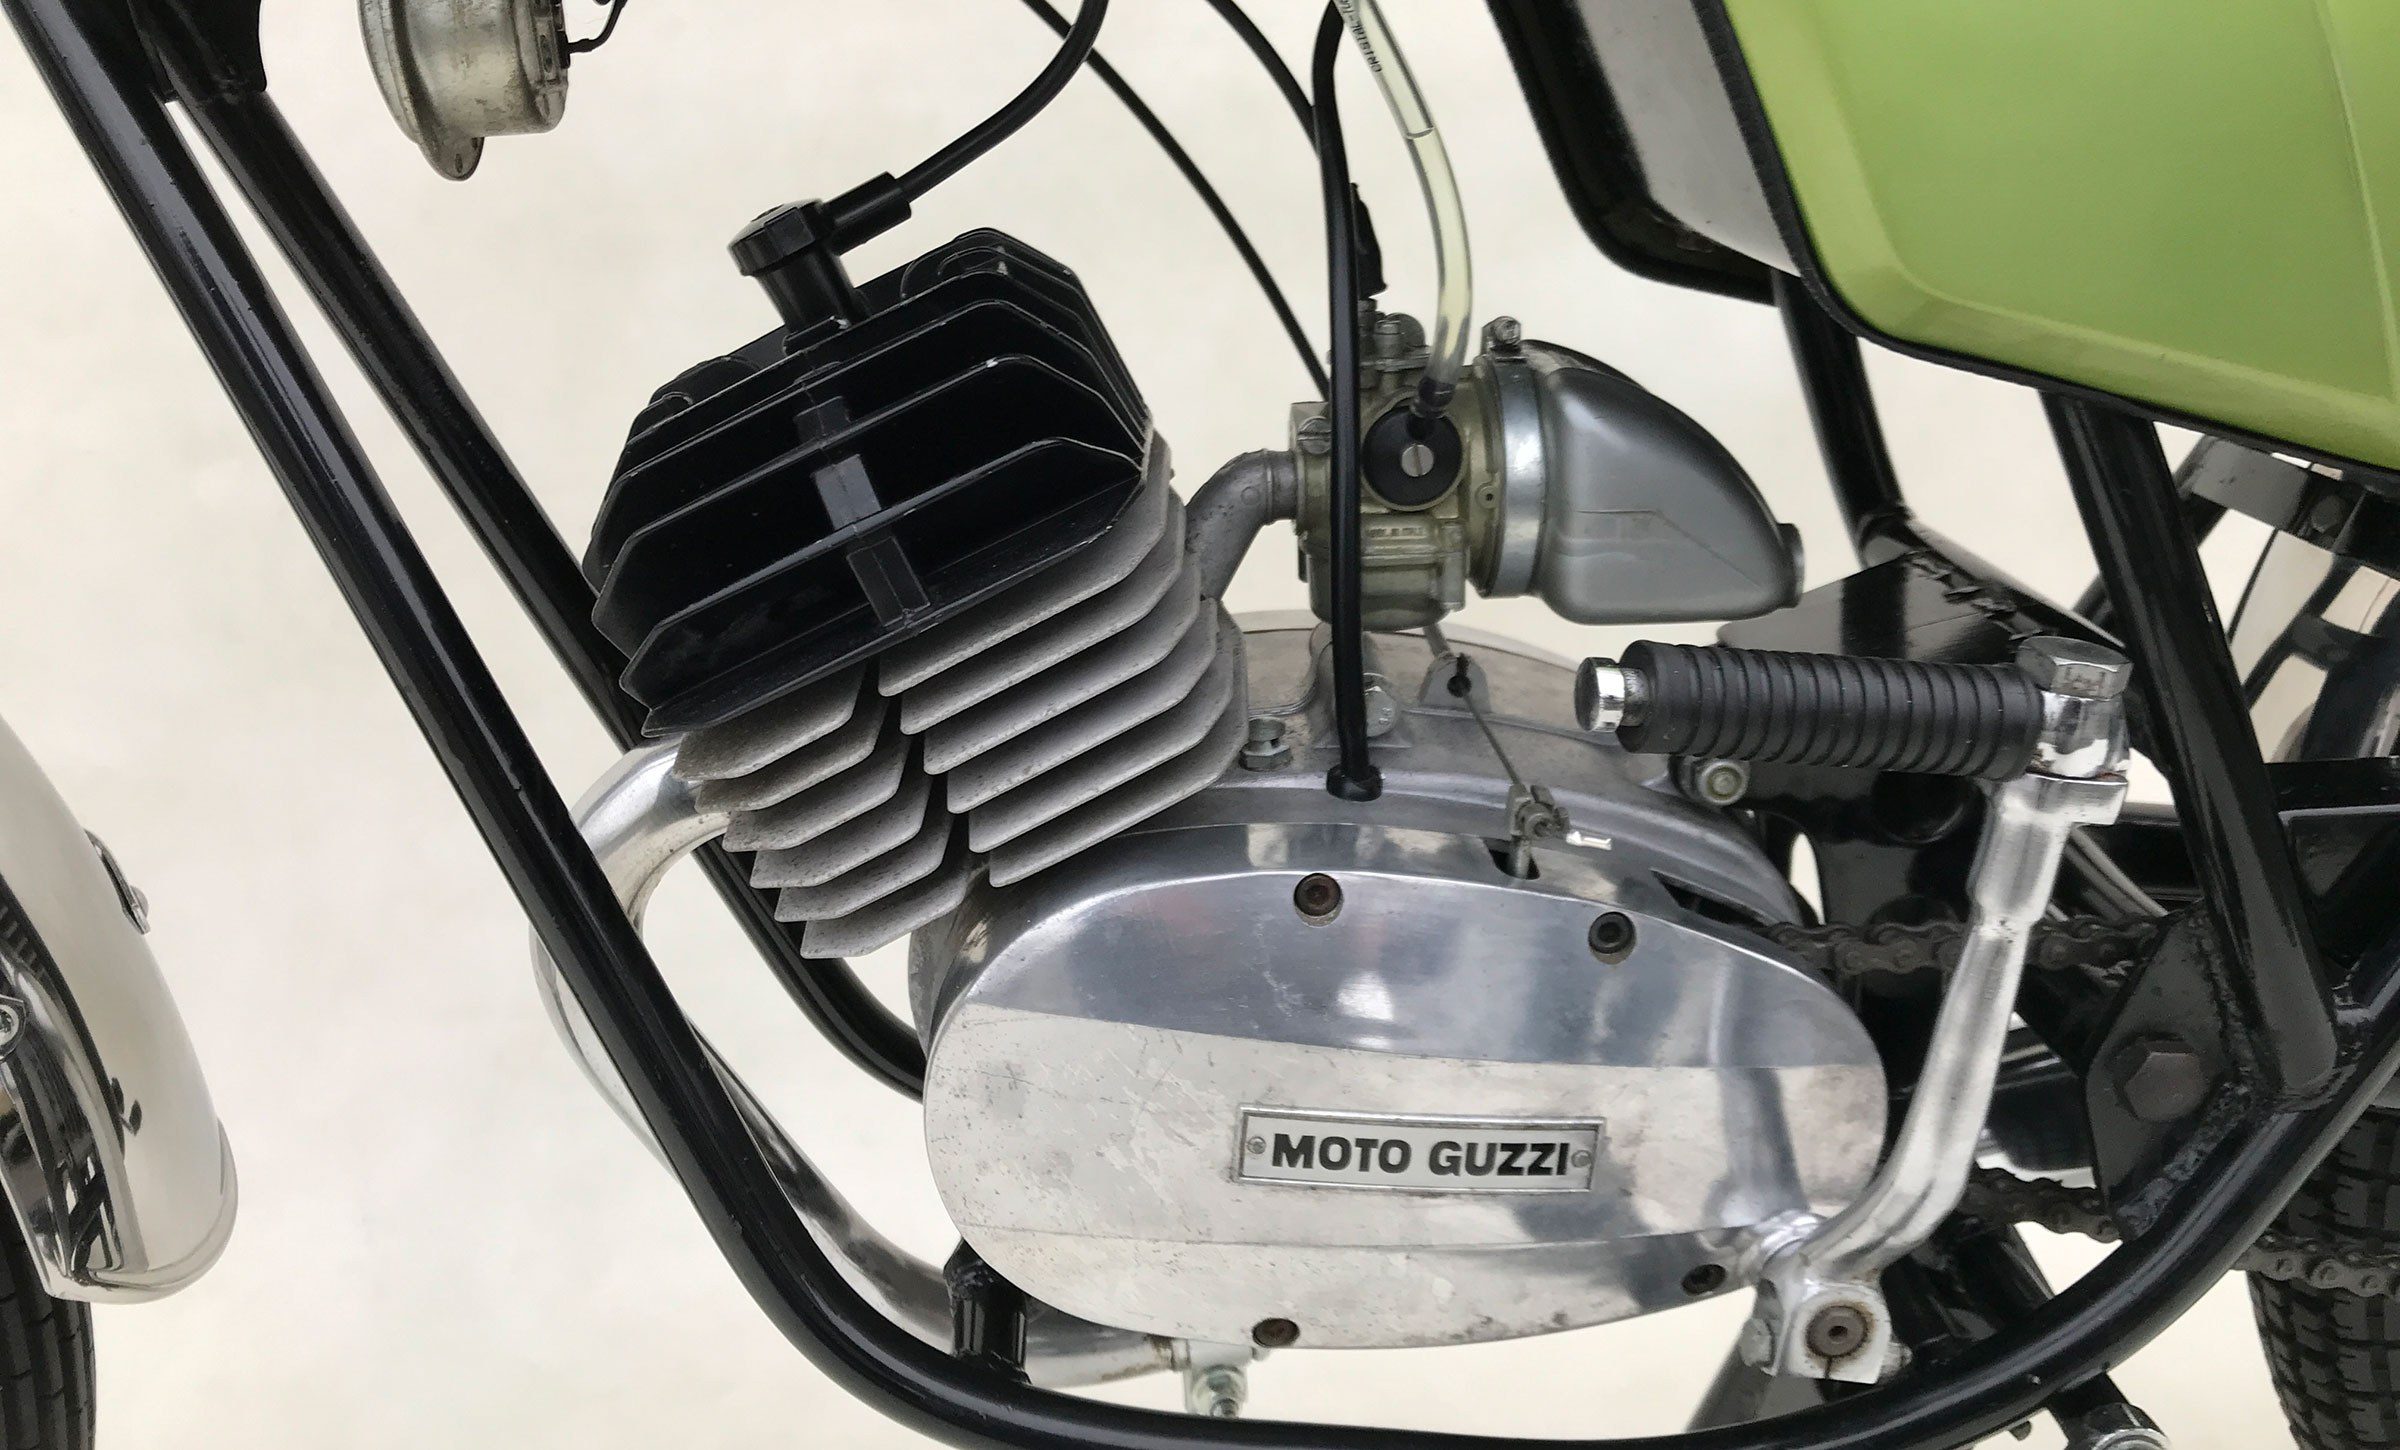 Moto guzzi gs50 nibbio 1974 6